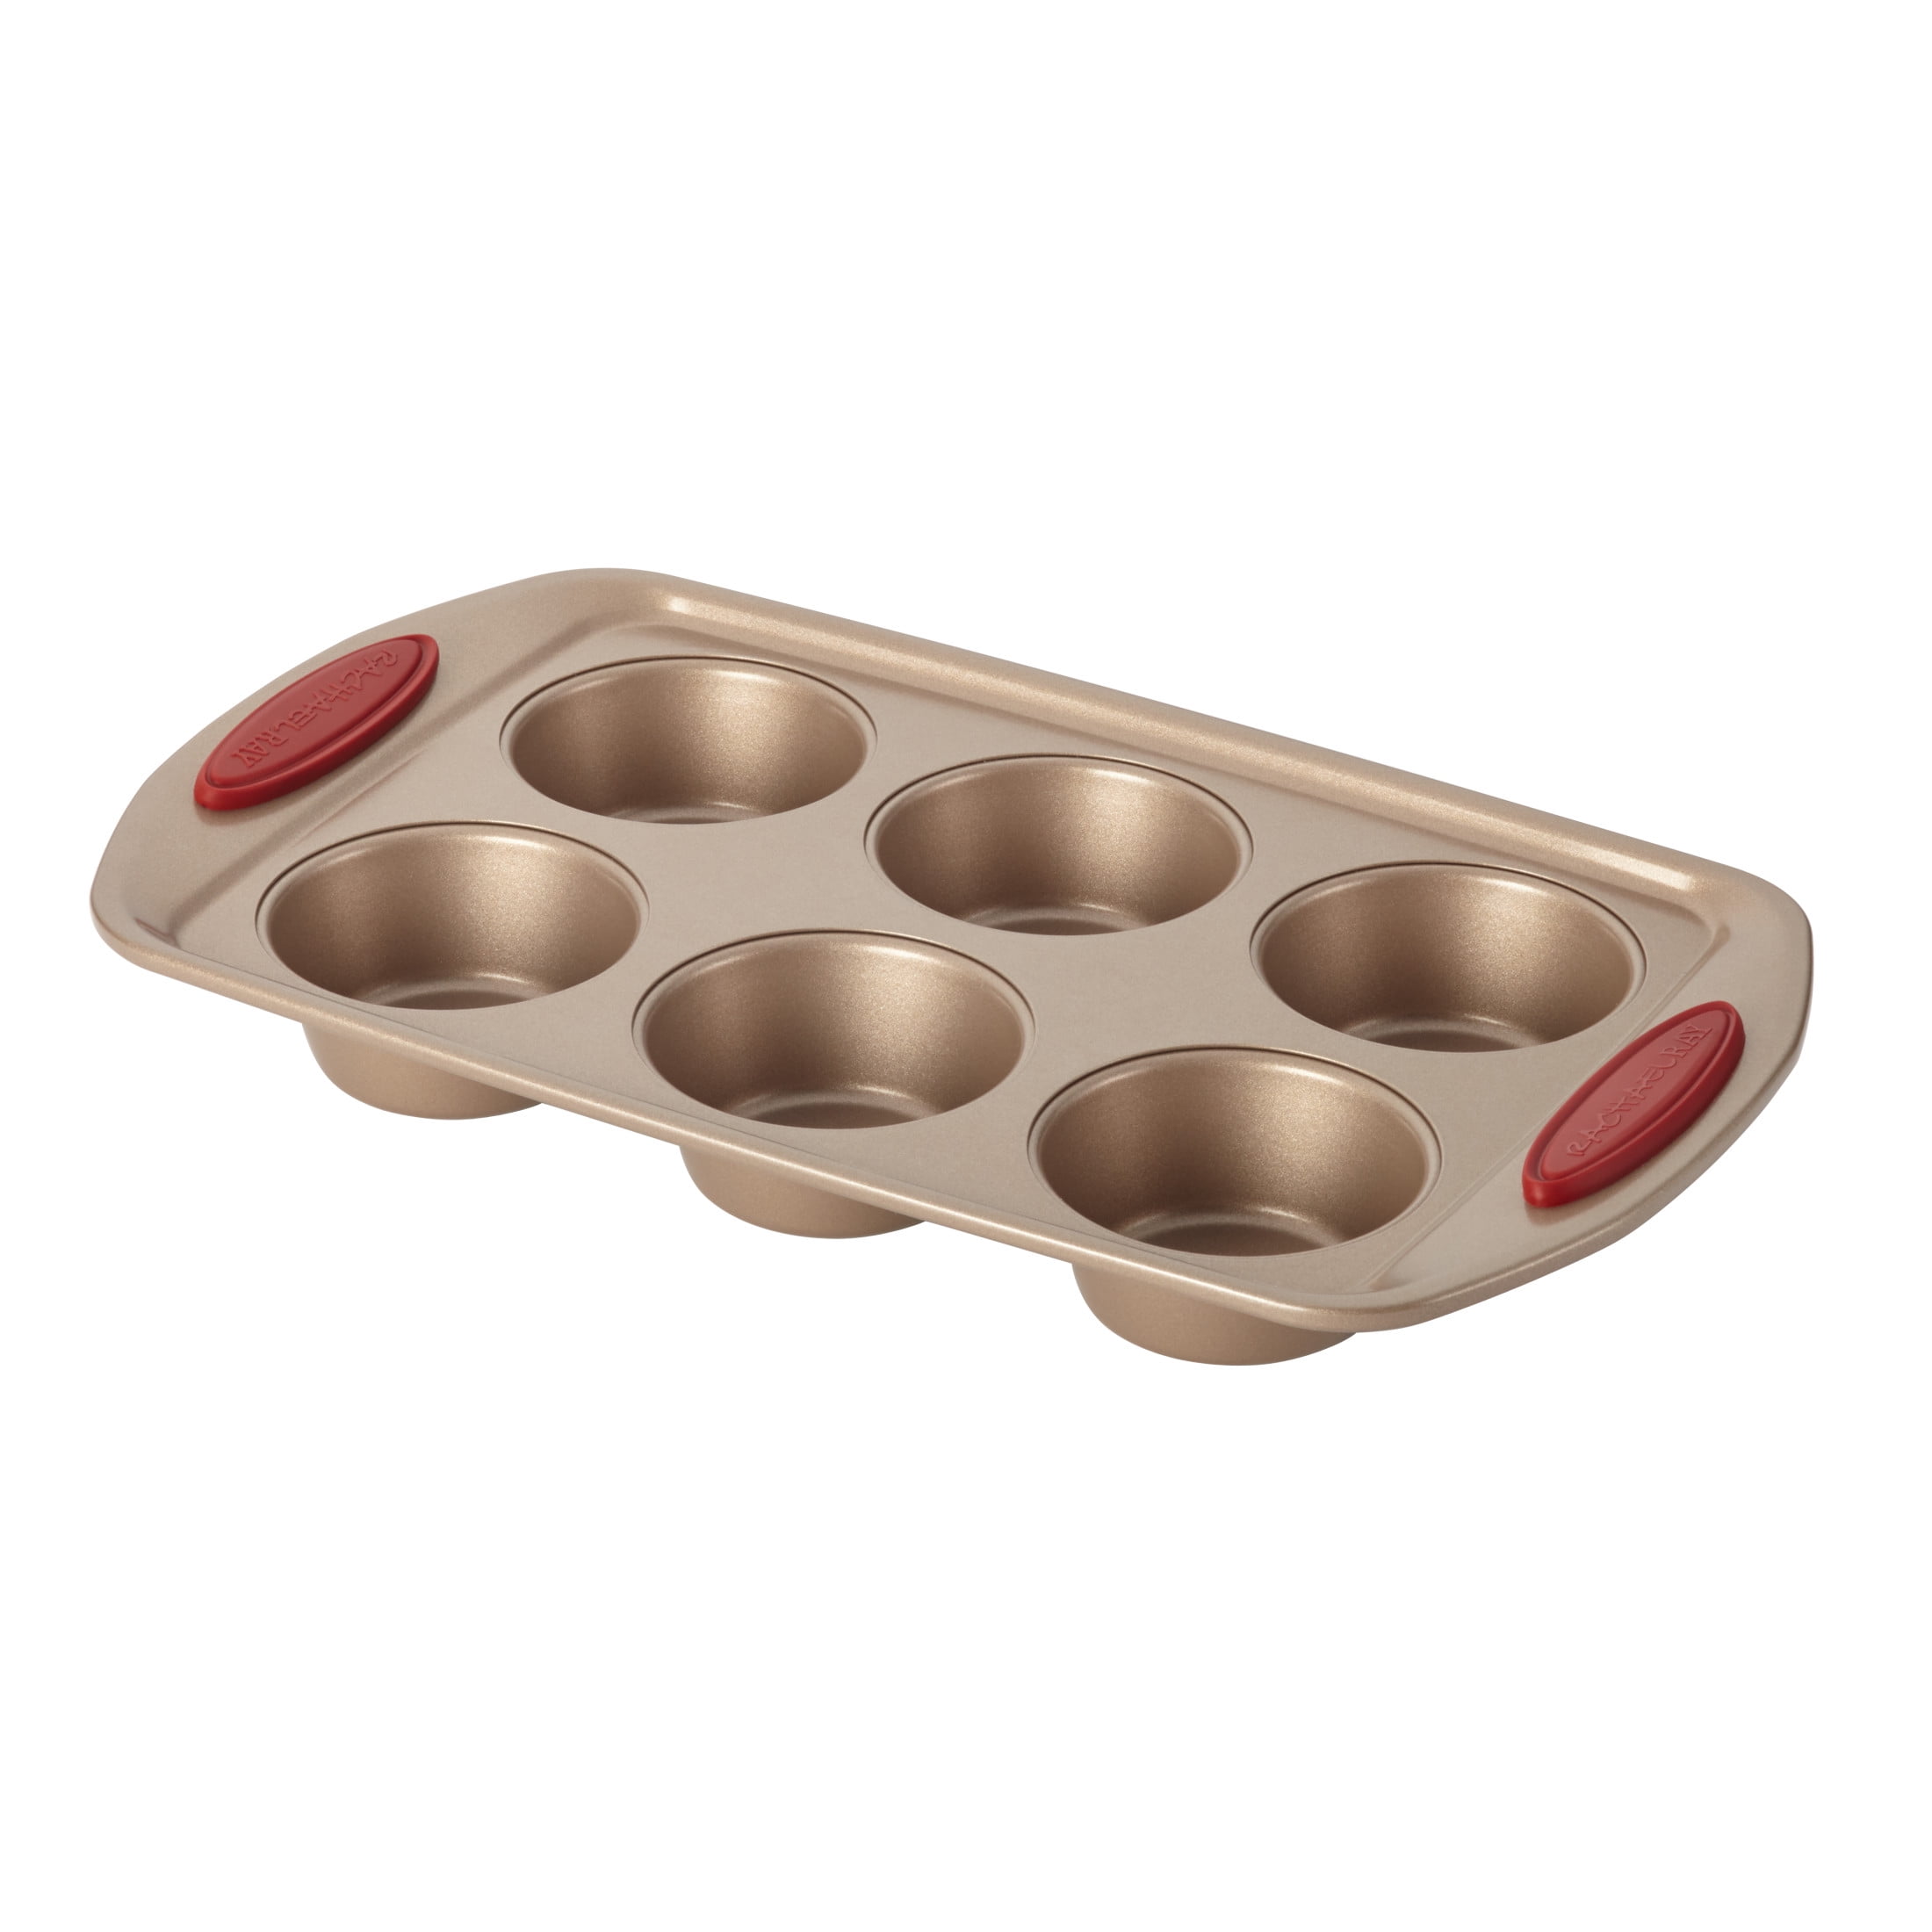 Acrux7 4 Pcs Baking Pans Set, Nonstick Baking Pans & Bowl Set, Deep Metal Baking Sheet Pans, Rectangular Stackable Baking Trays, Cake Pans Sets for